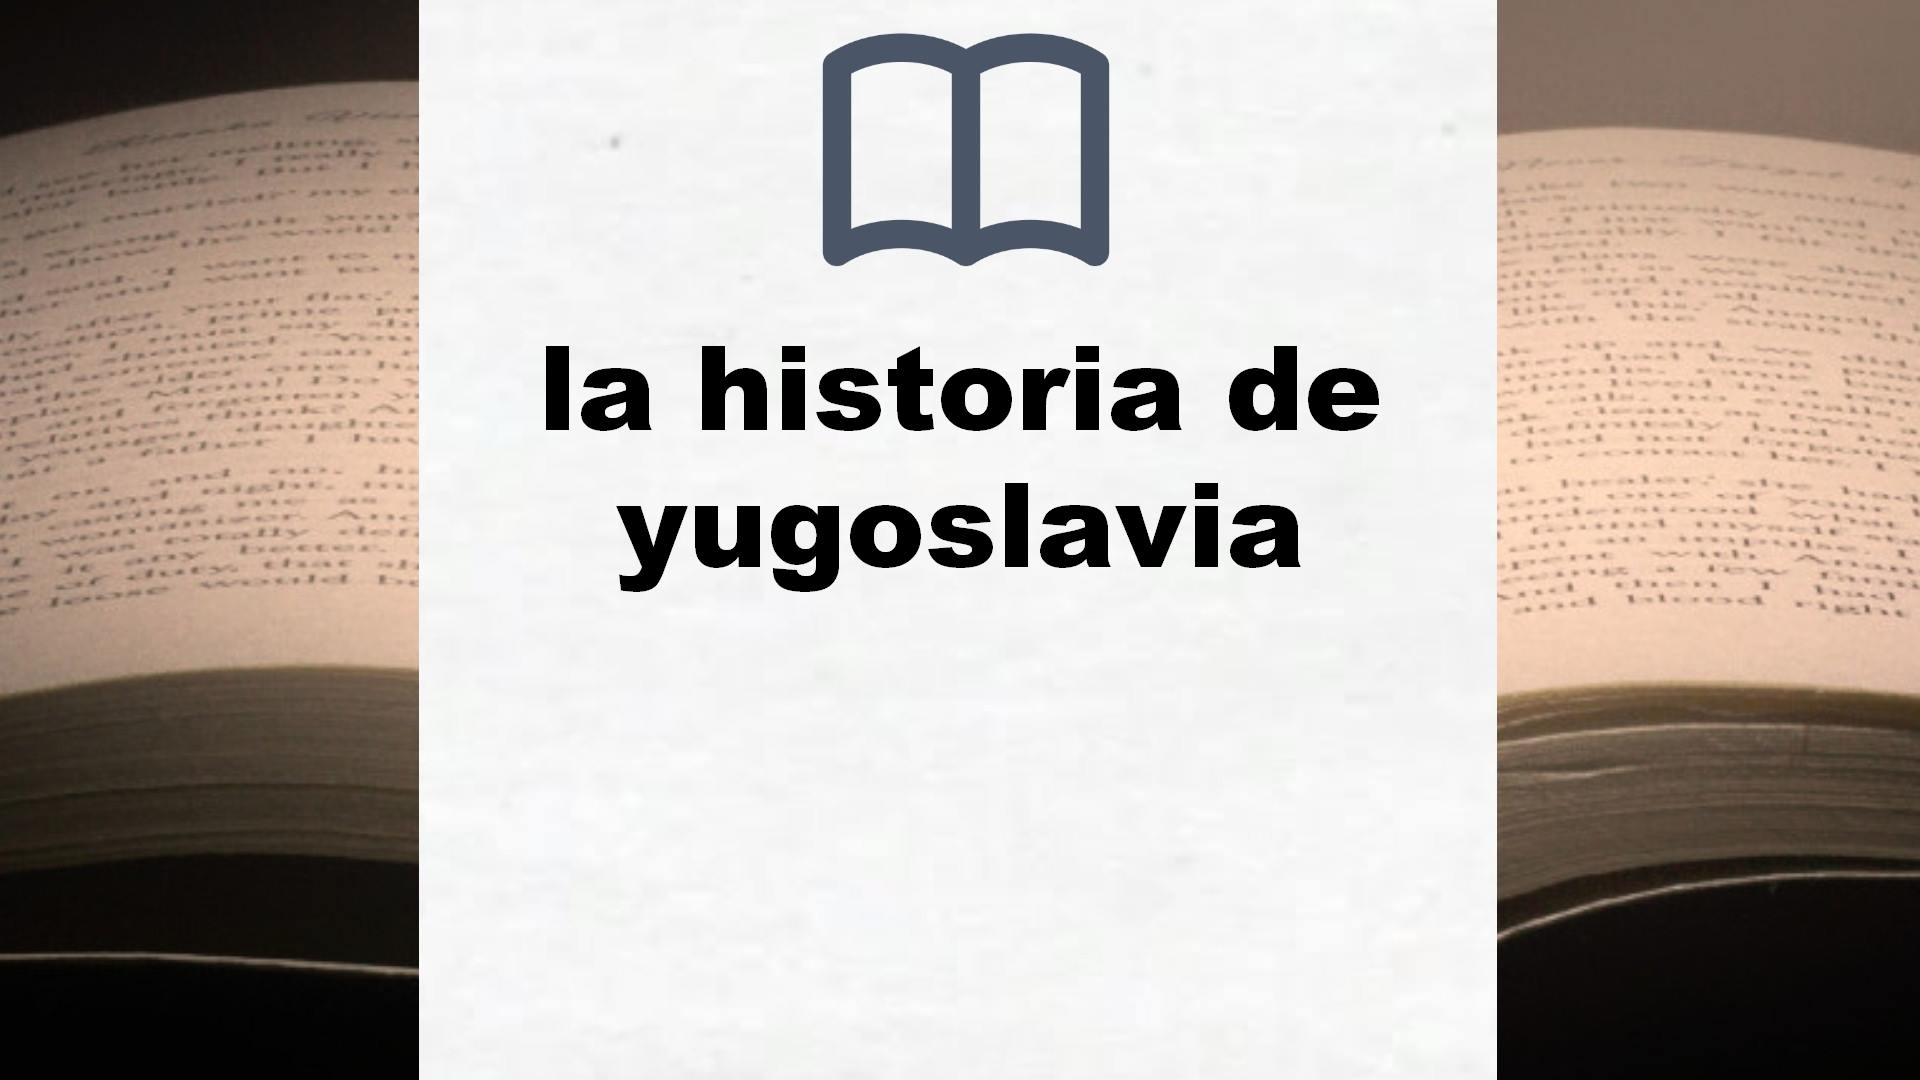 Libros sobre la historia de yugoslavia